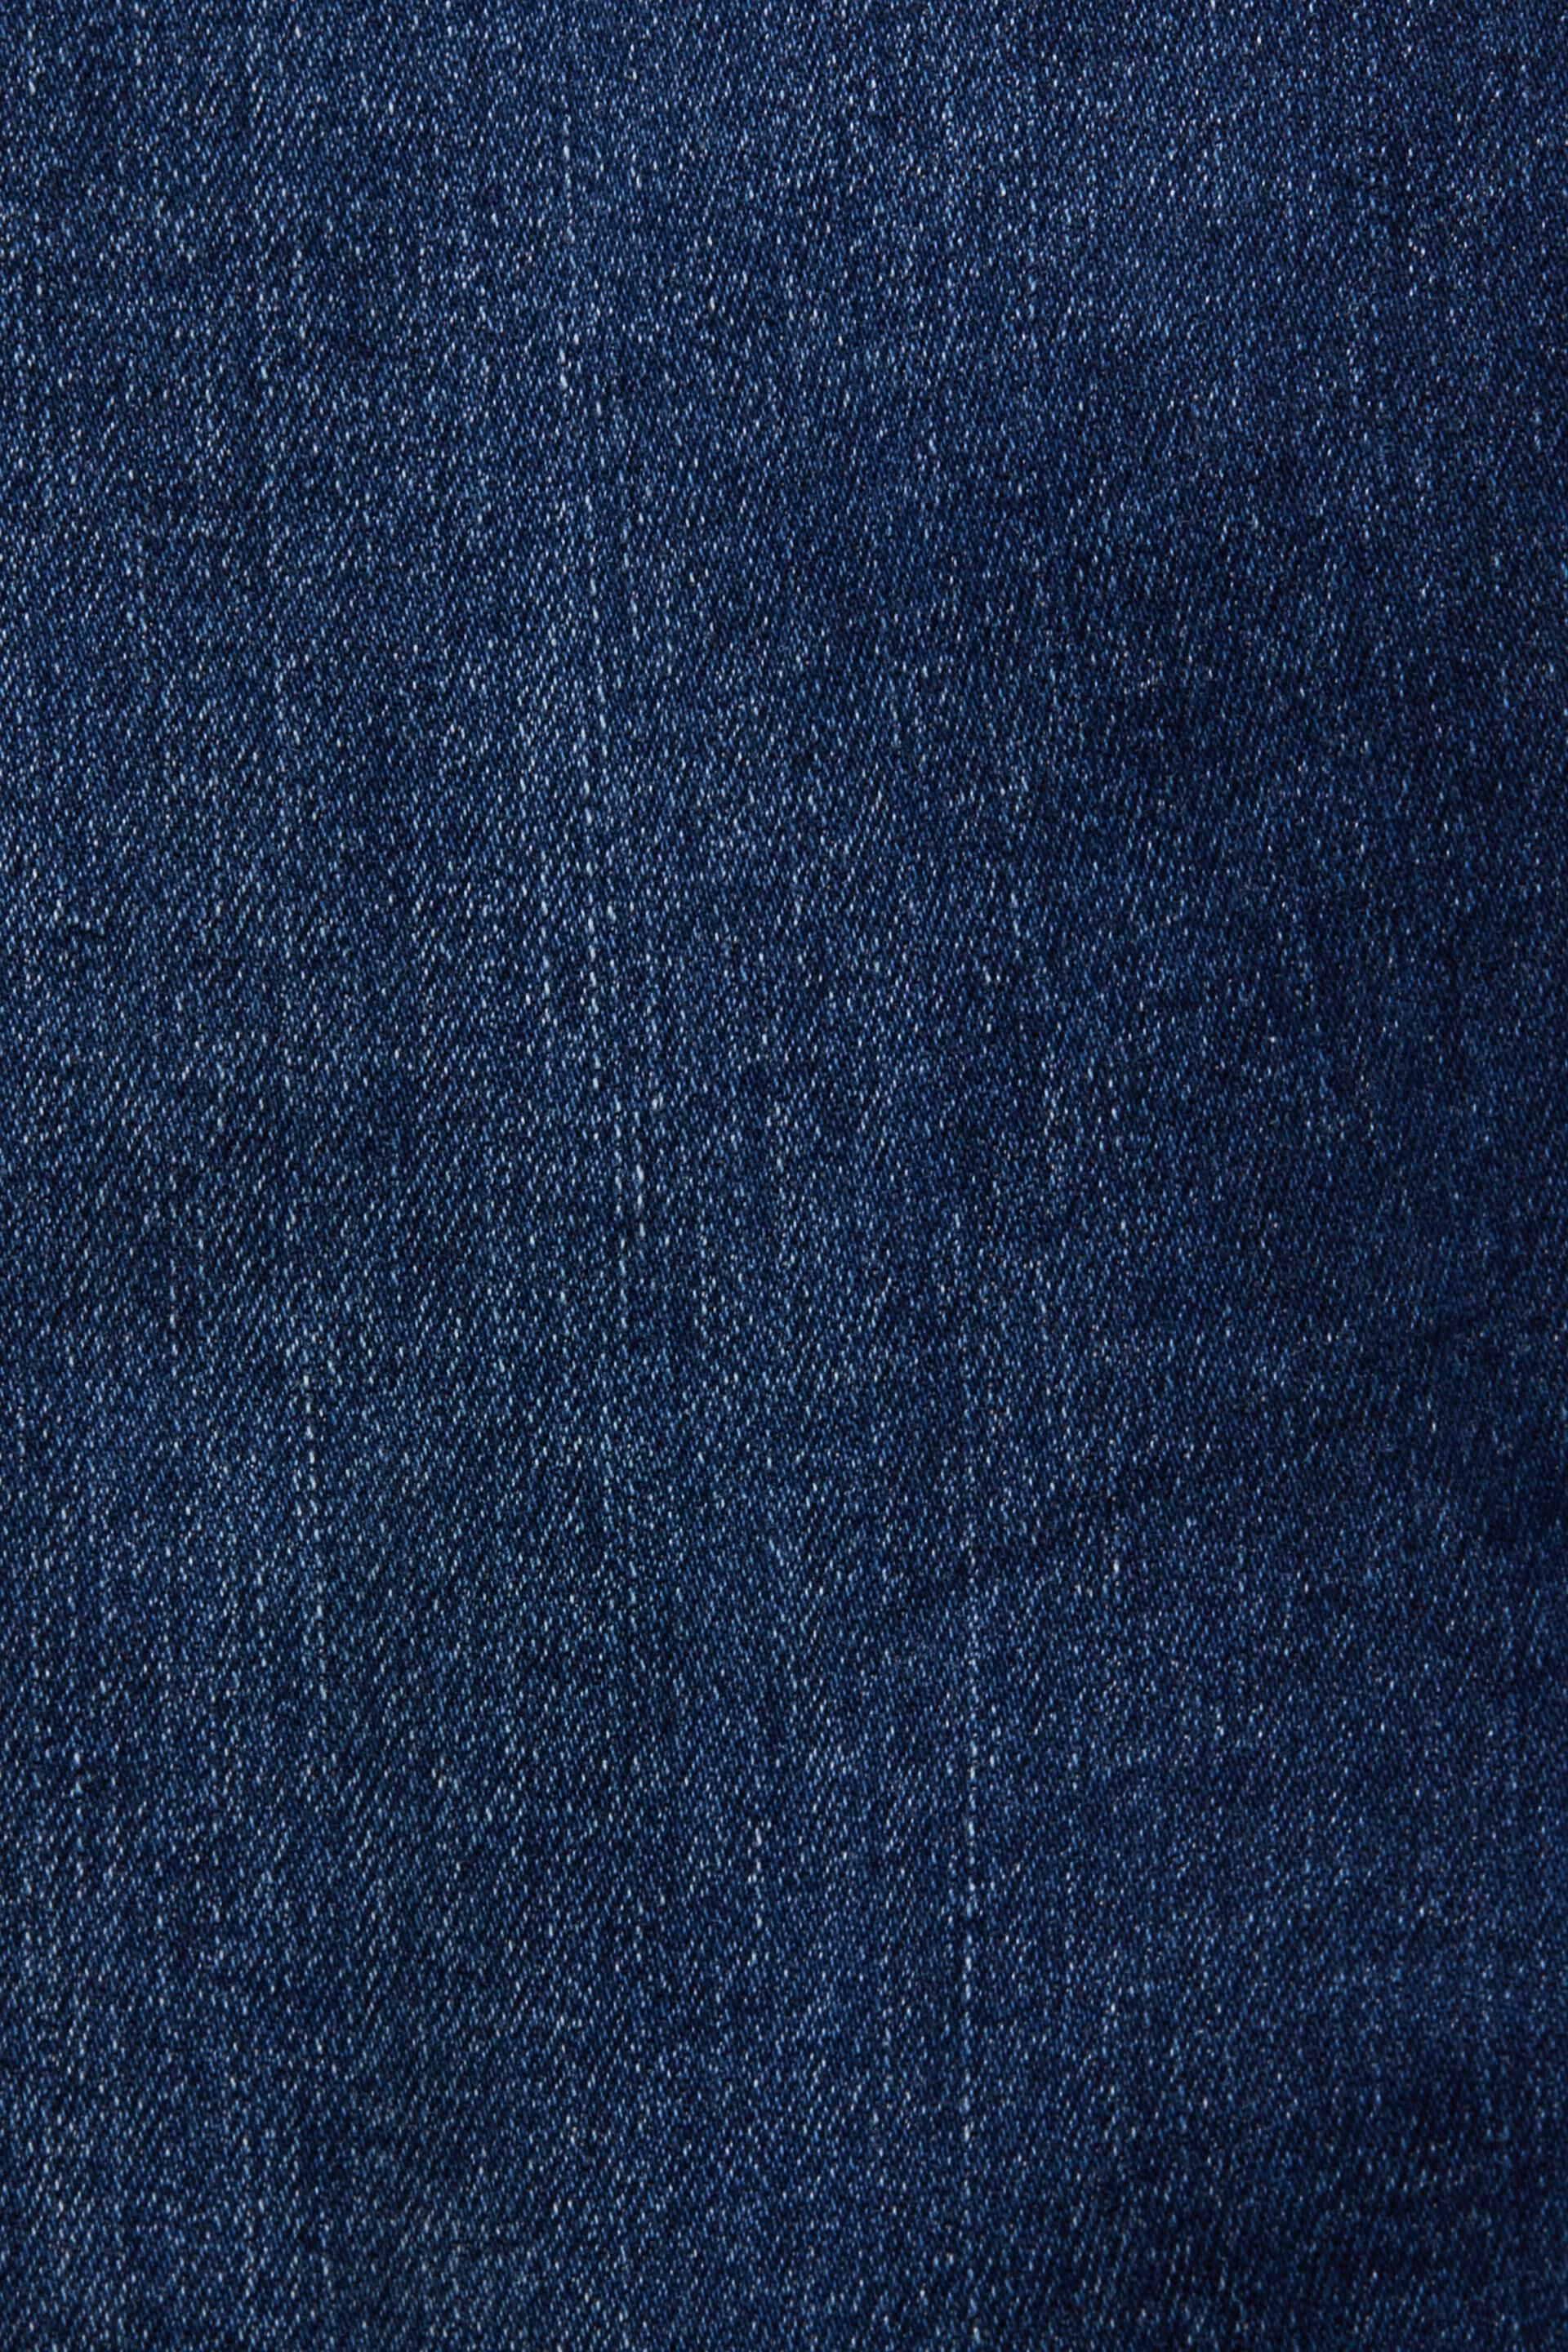 Esprit Damen Bootcut-Jeans mit mittlerer Leibhöhe